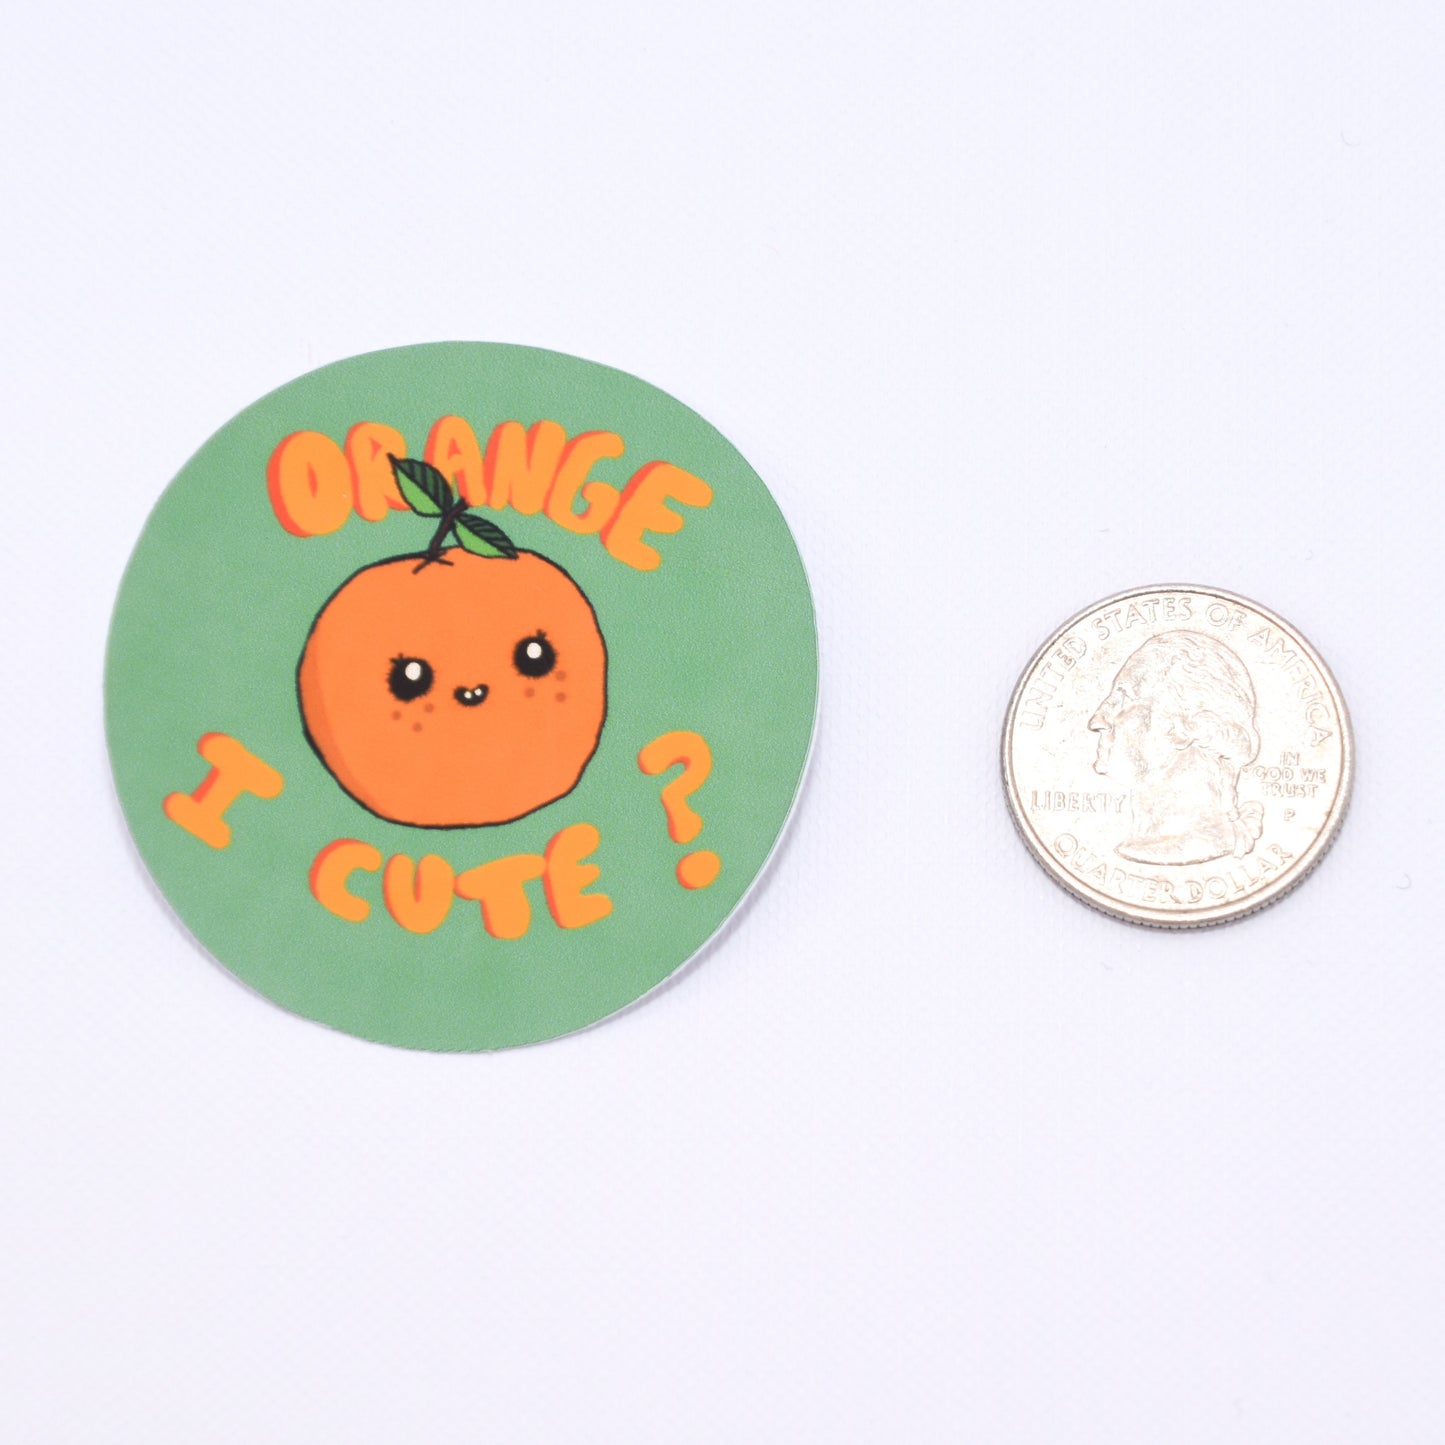 "Orange I Cute?" Sticker